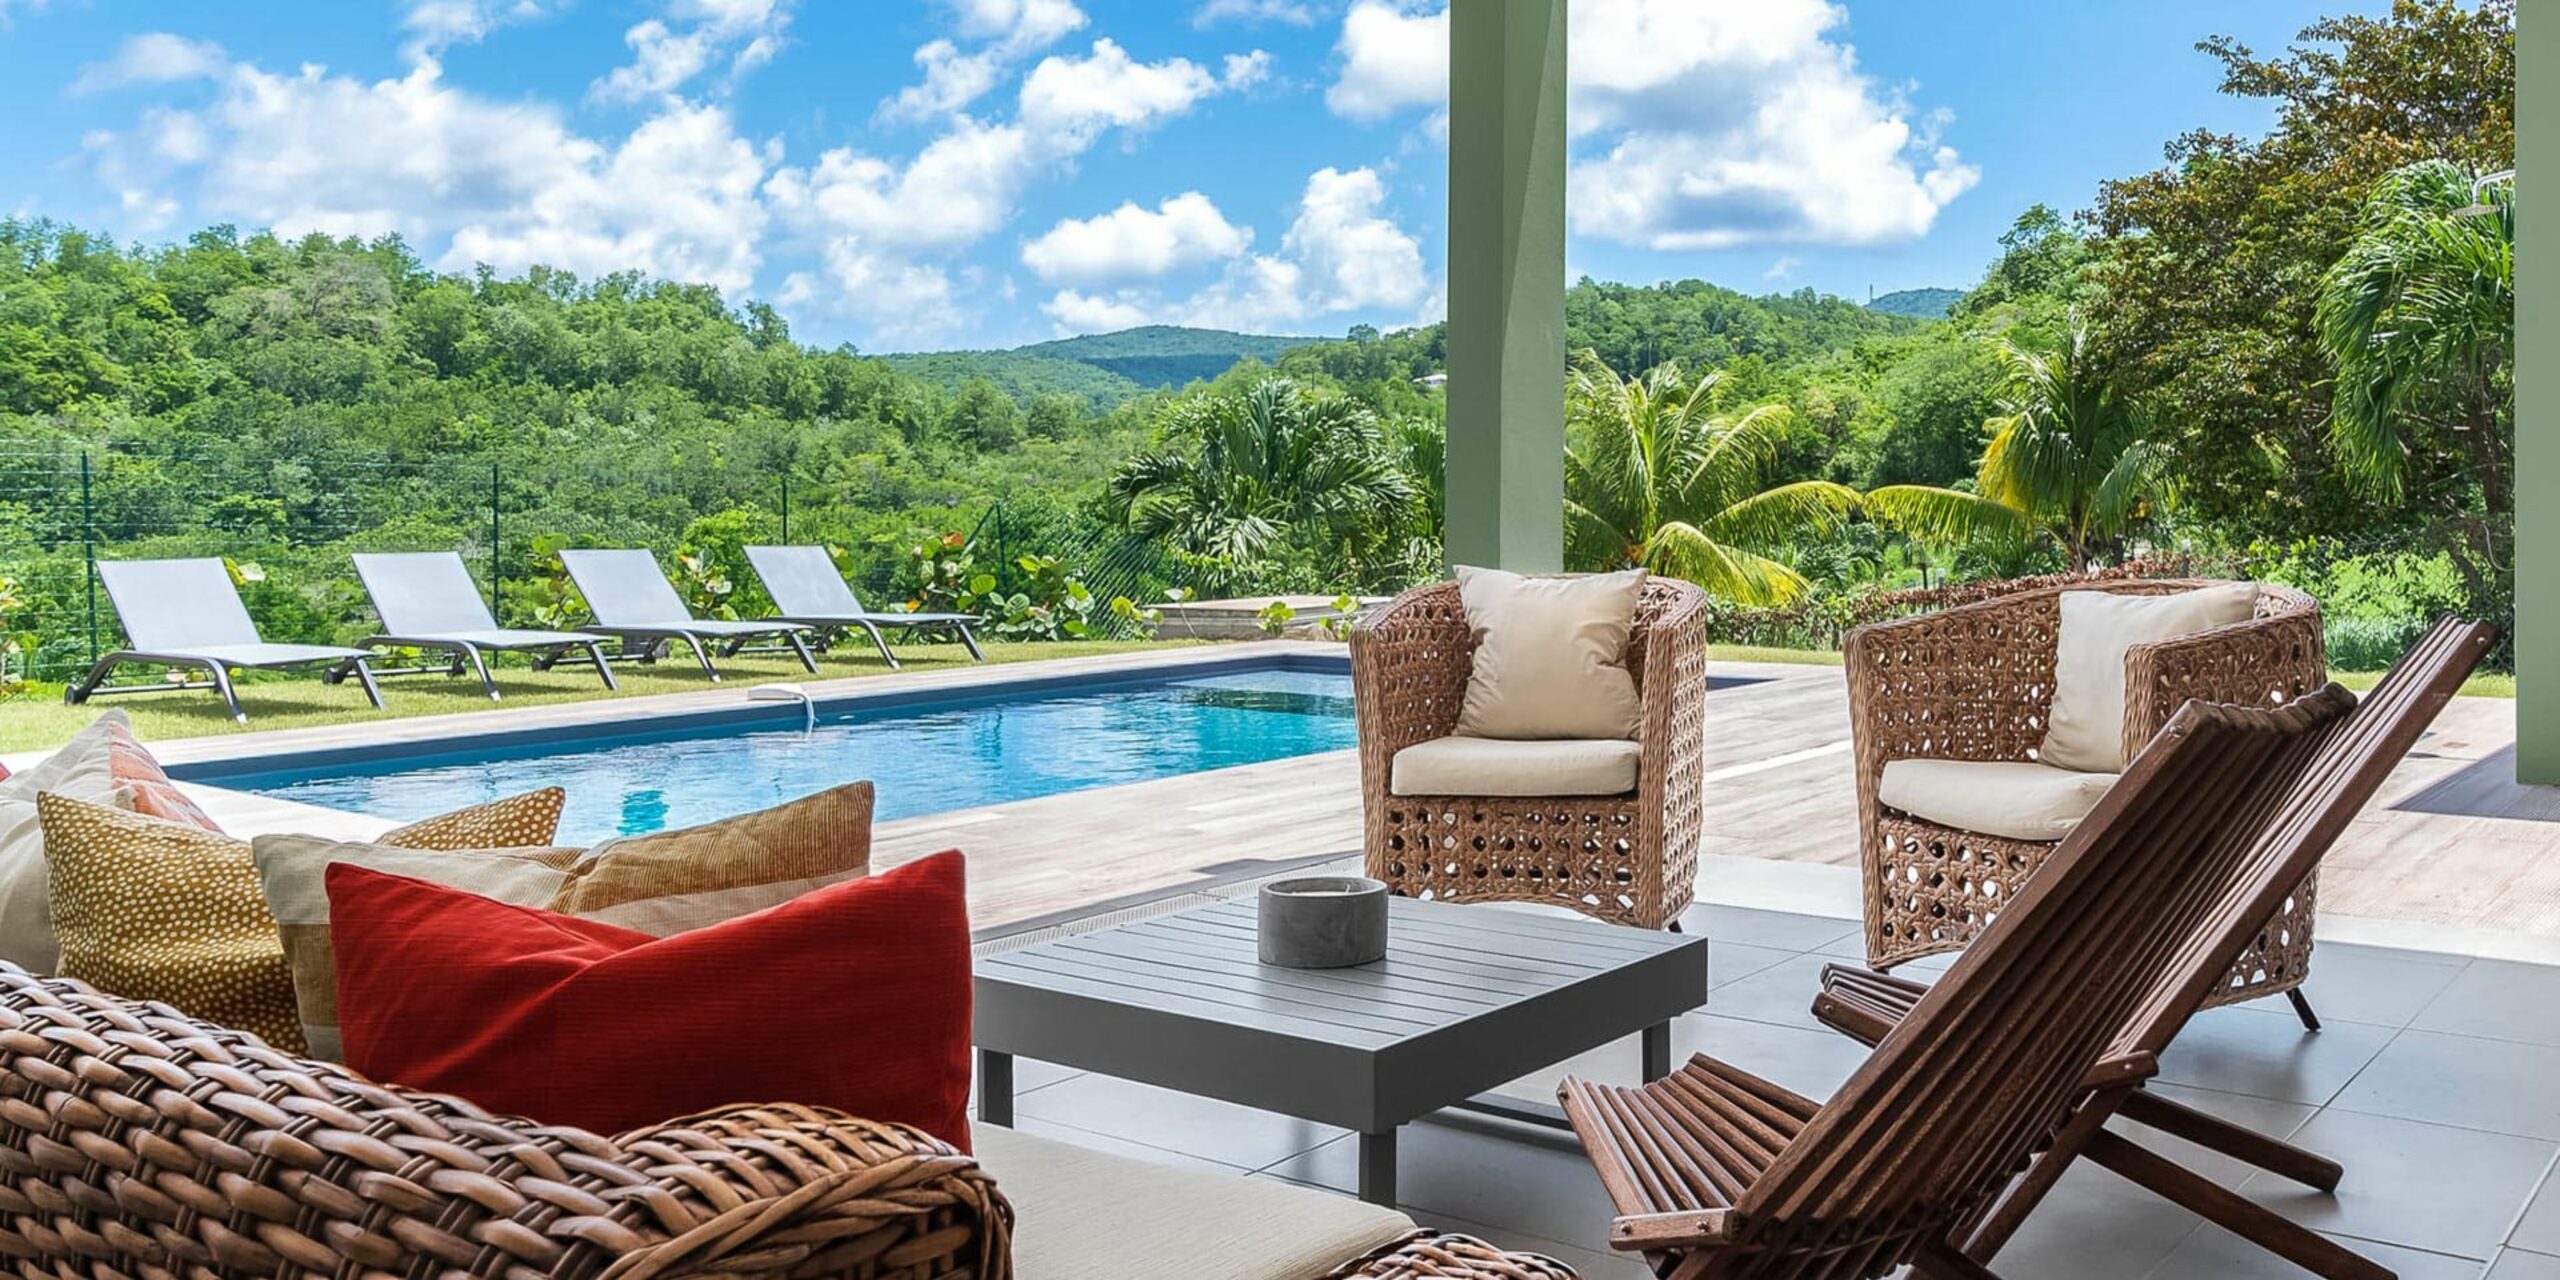 La terrasse extérieure avec piscine de la villa de Fort-de-France en Martinique